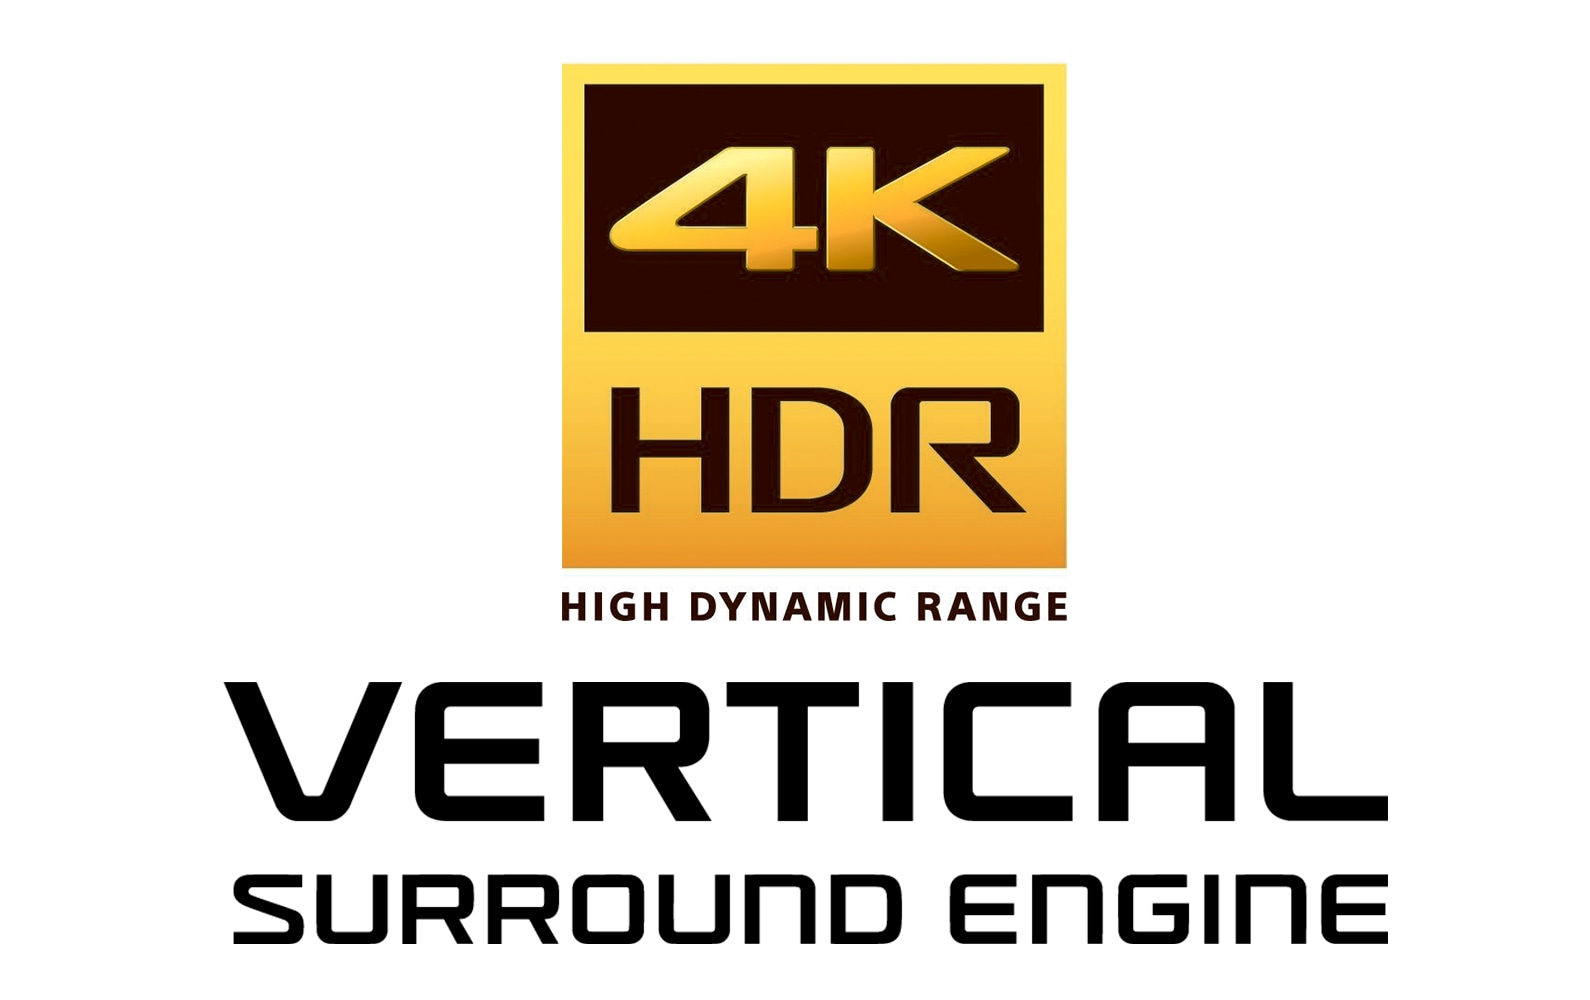 4K HDR - Vertical surround engine